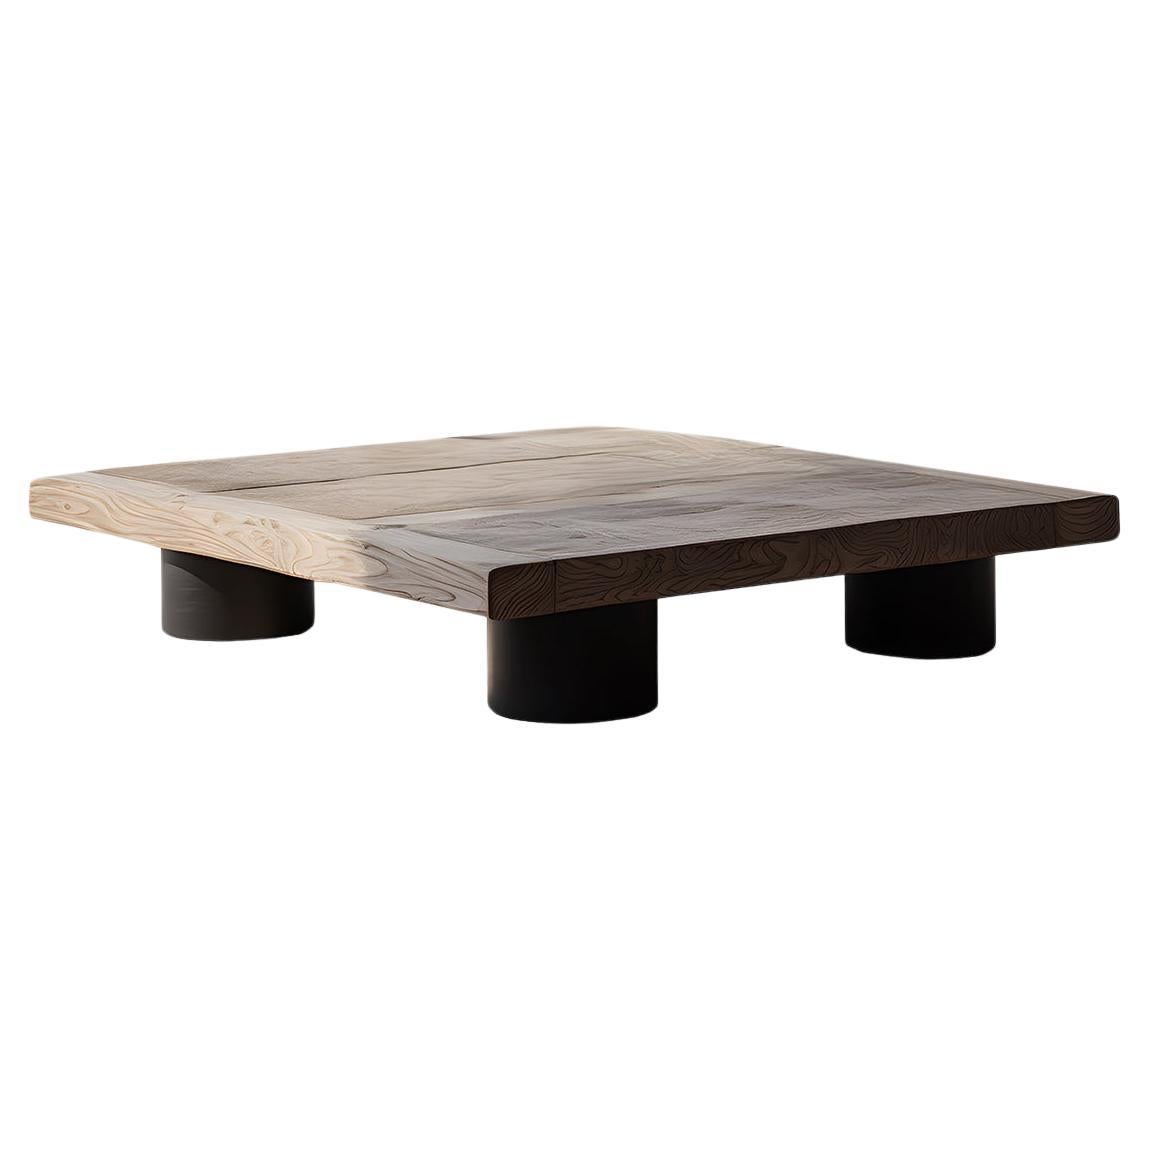 Bold Square Coffee Table in Black Tint - Architectural Fundamenta 29 by NONO